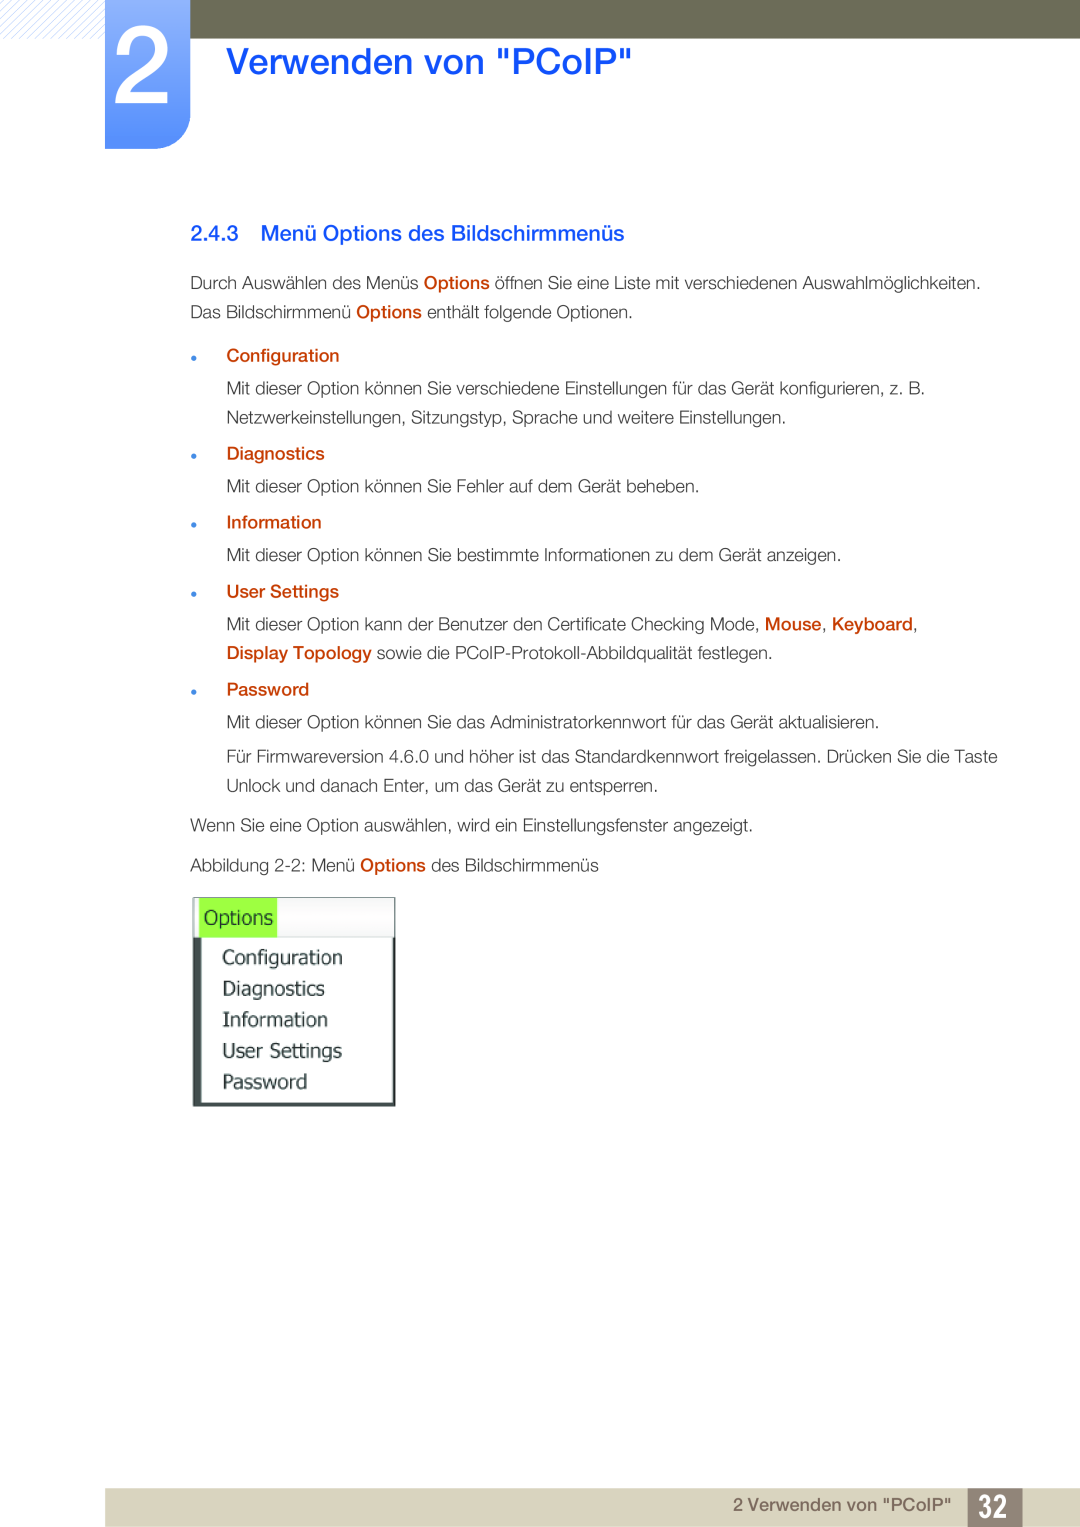 Samsung LF-NXN2N/EN manual 2.4.3 Menü Options des Bildschirmmenüs, Verwenden von PCoIP,  Configuration,  Diagnostics 